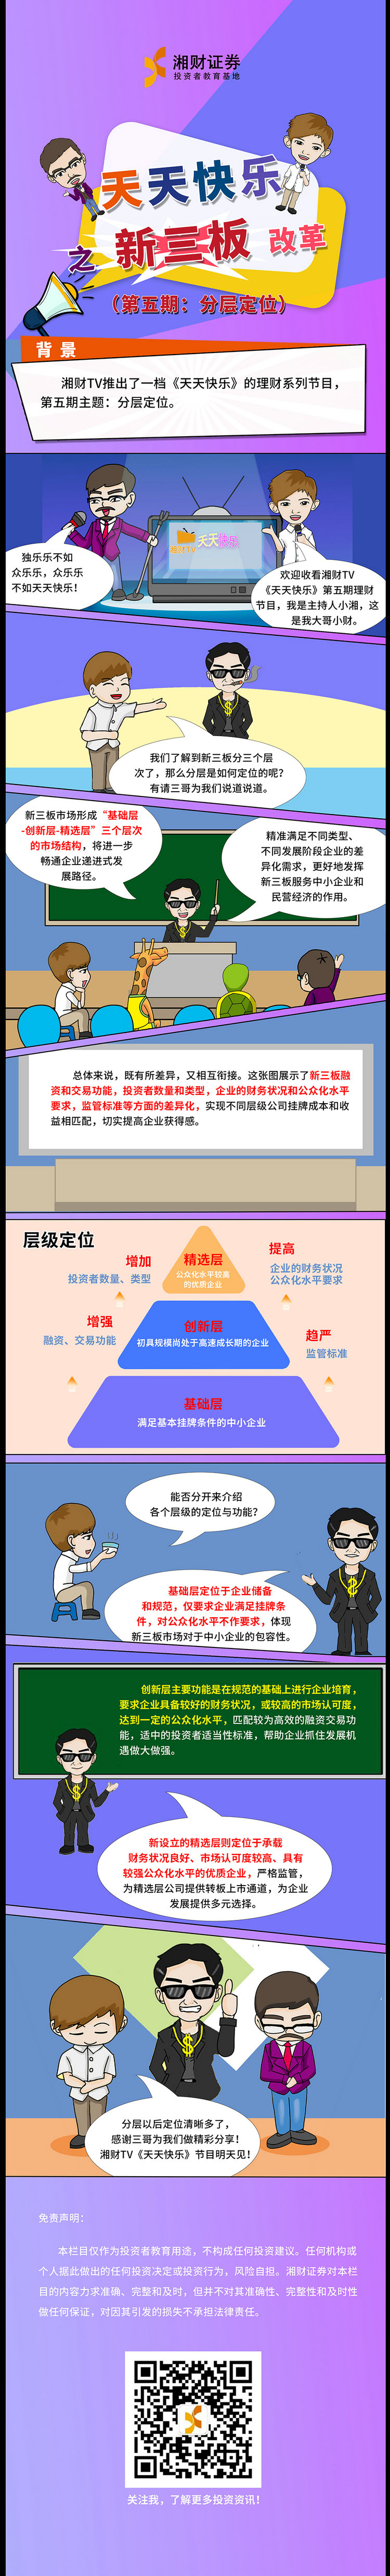 15.湘财证券-天天快乐之新三板：分层定位.jpg